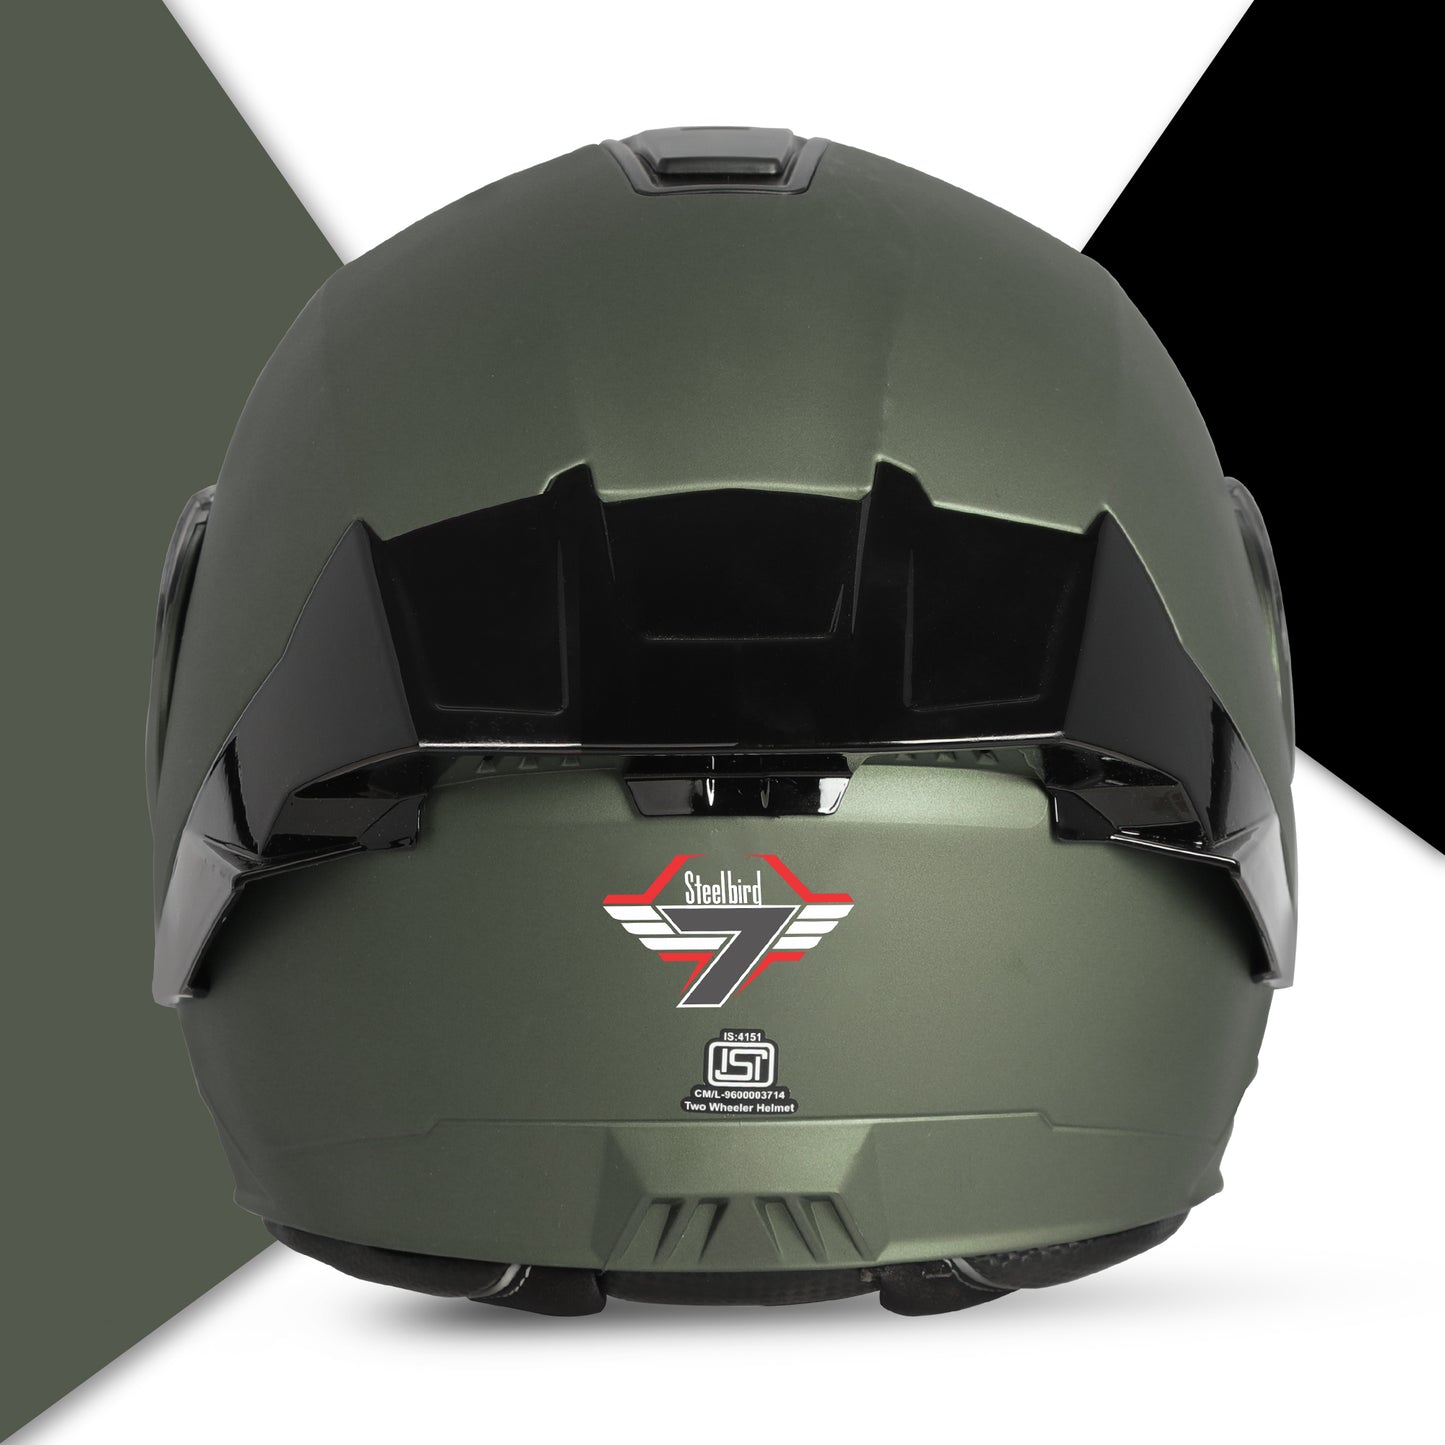 Steelbird SBA-8 7Wings ISI Certified Flip-Up Helmet for Men and Women (Matt Battle Green with Smoke Visor)